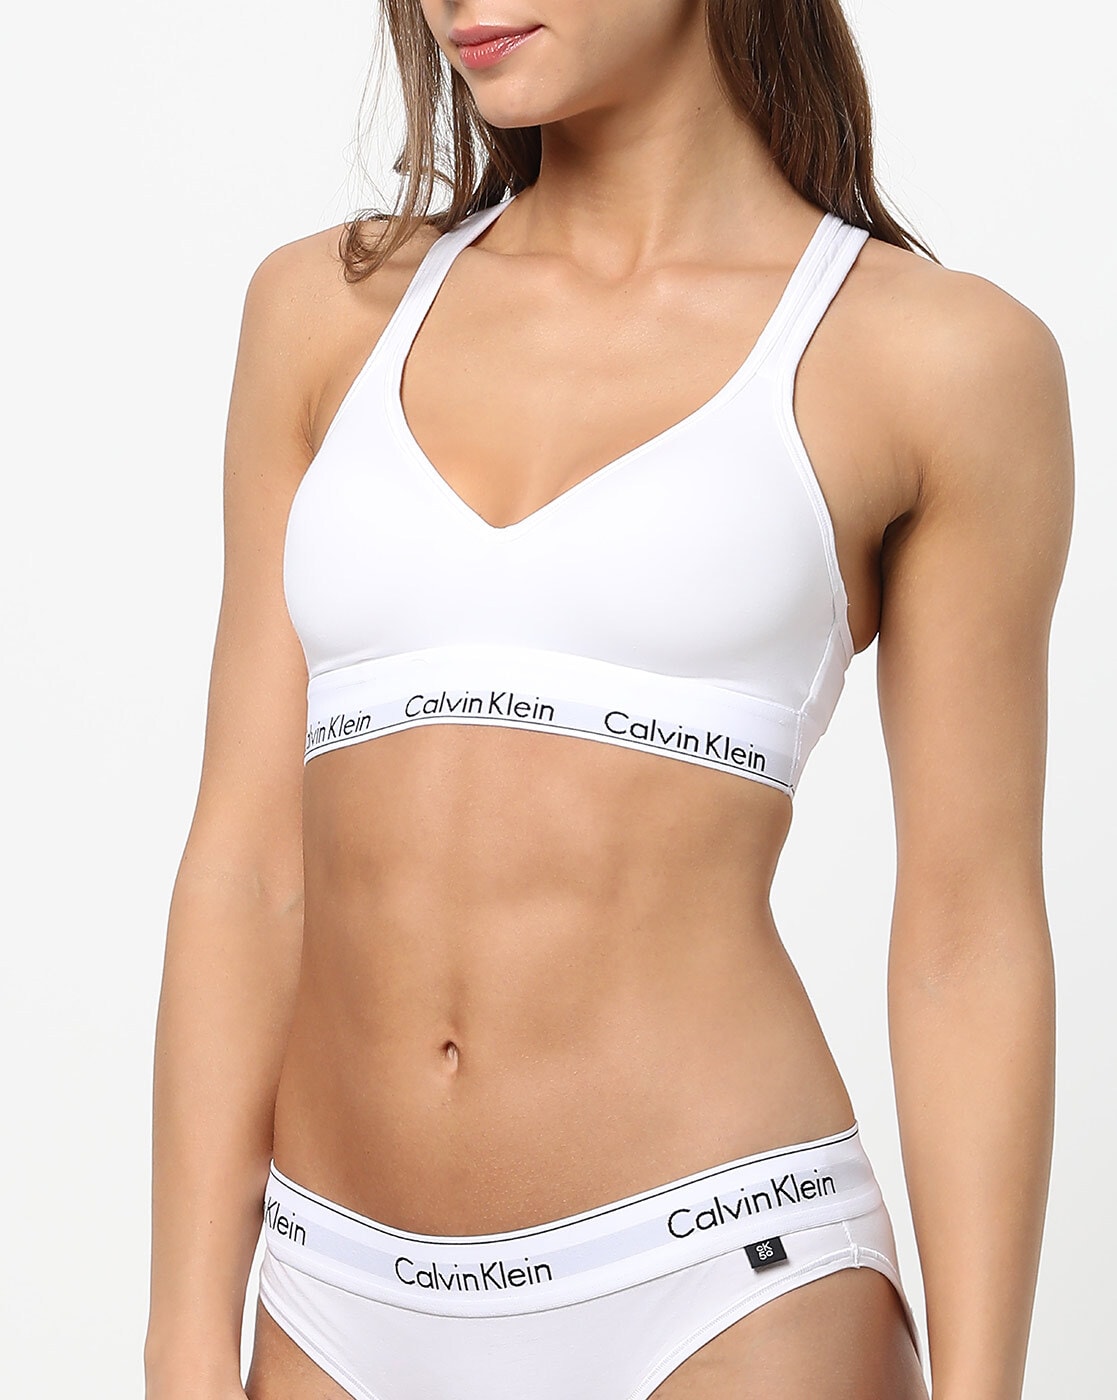 Calvin Klein Underwear Women's White Bras